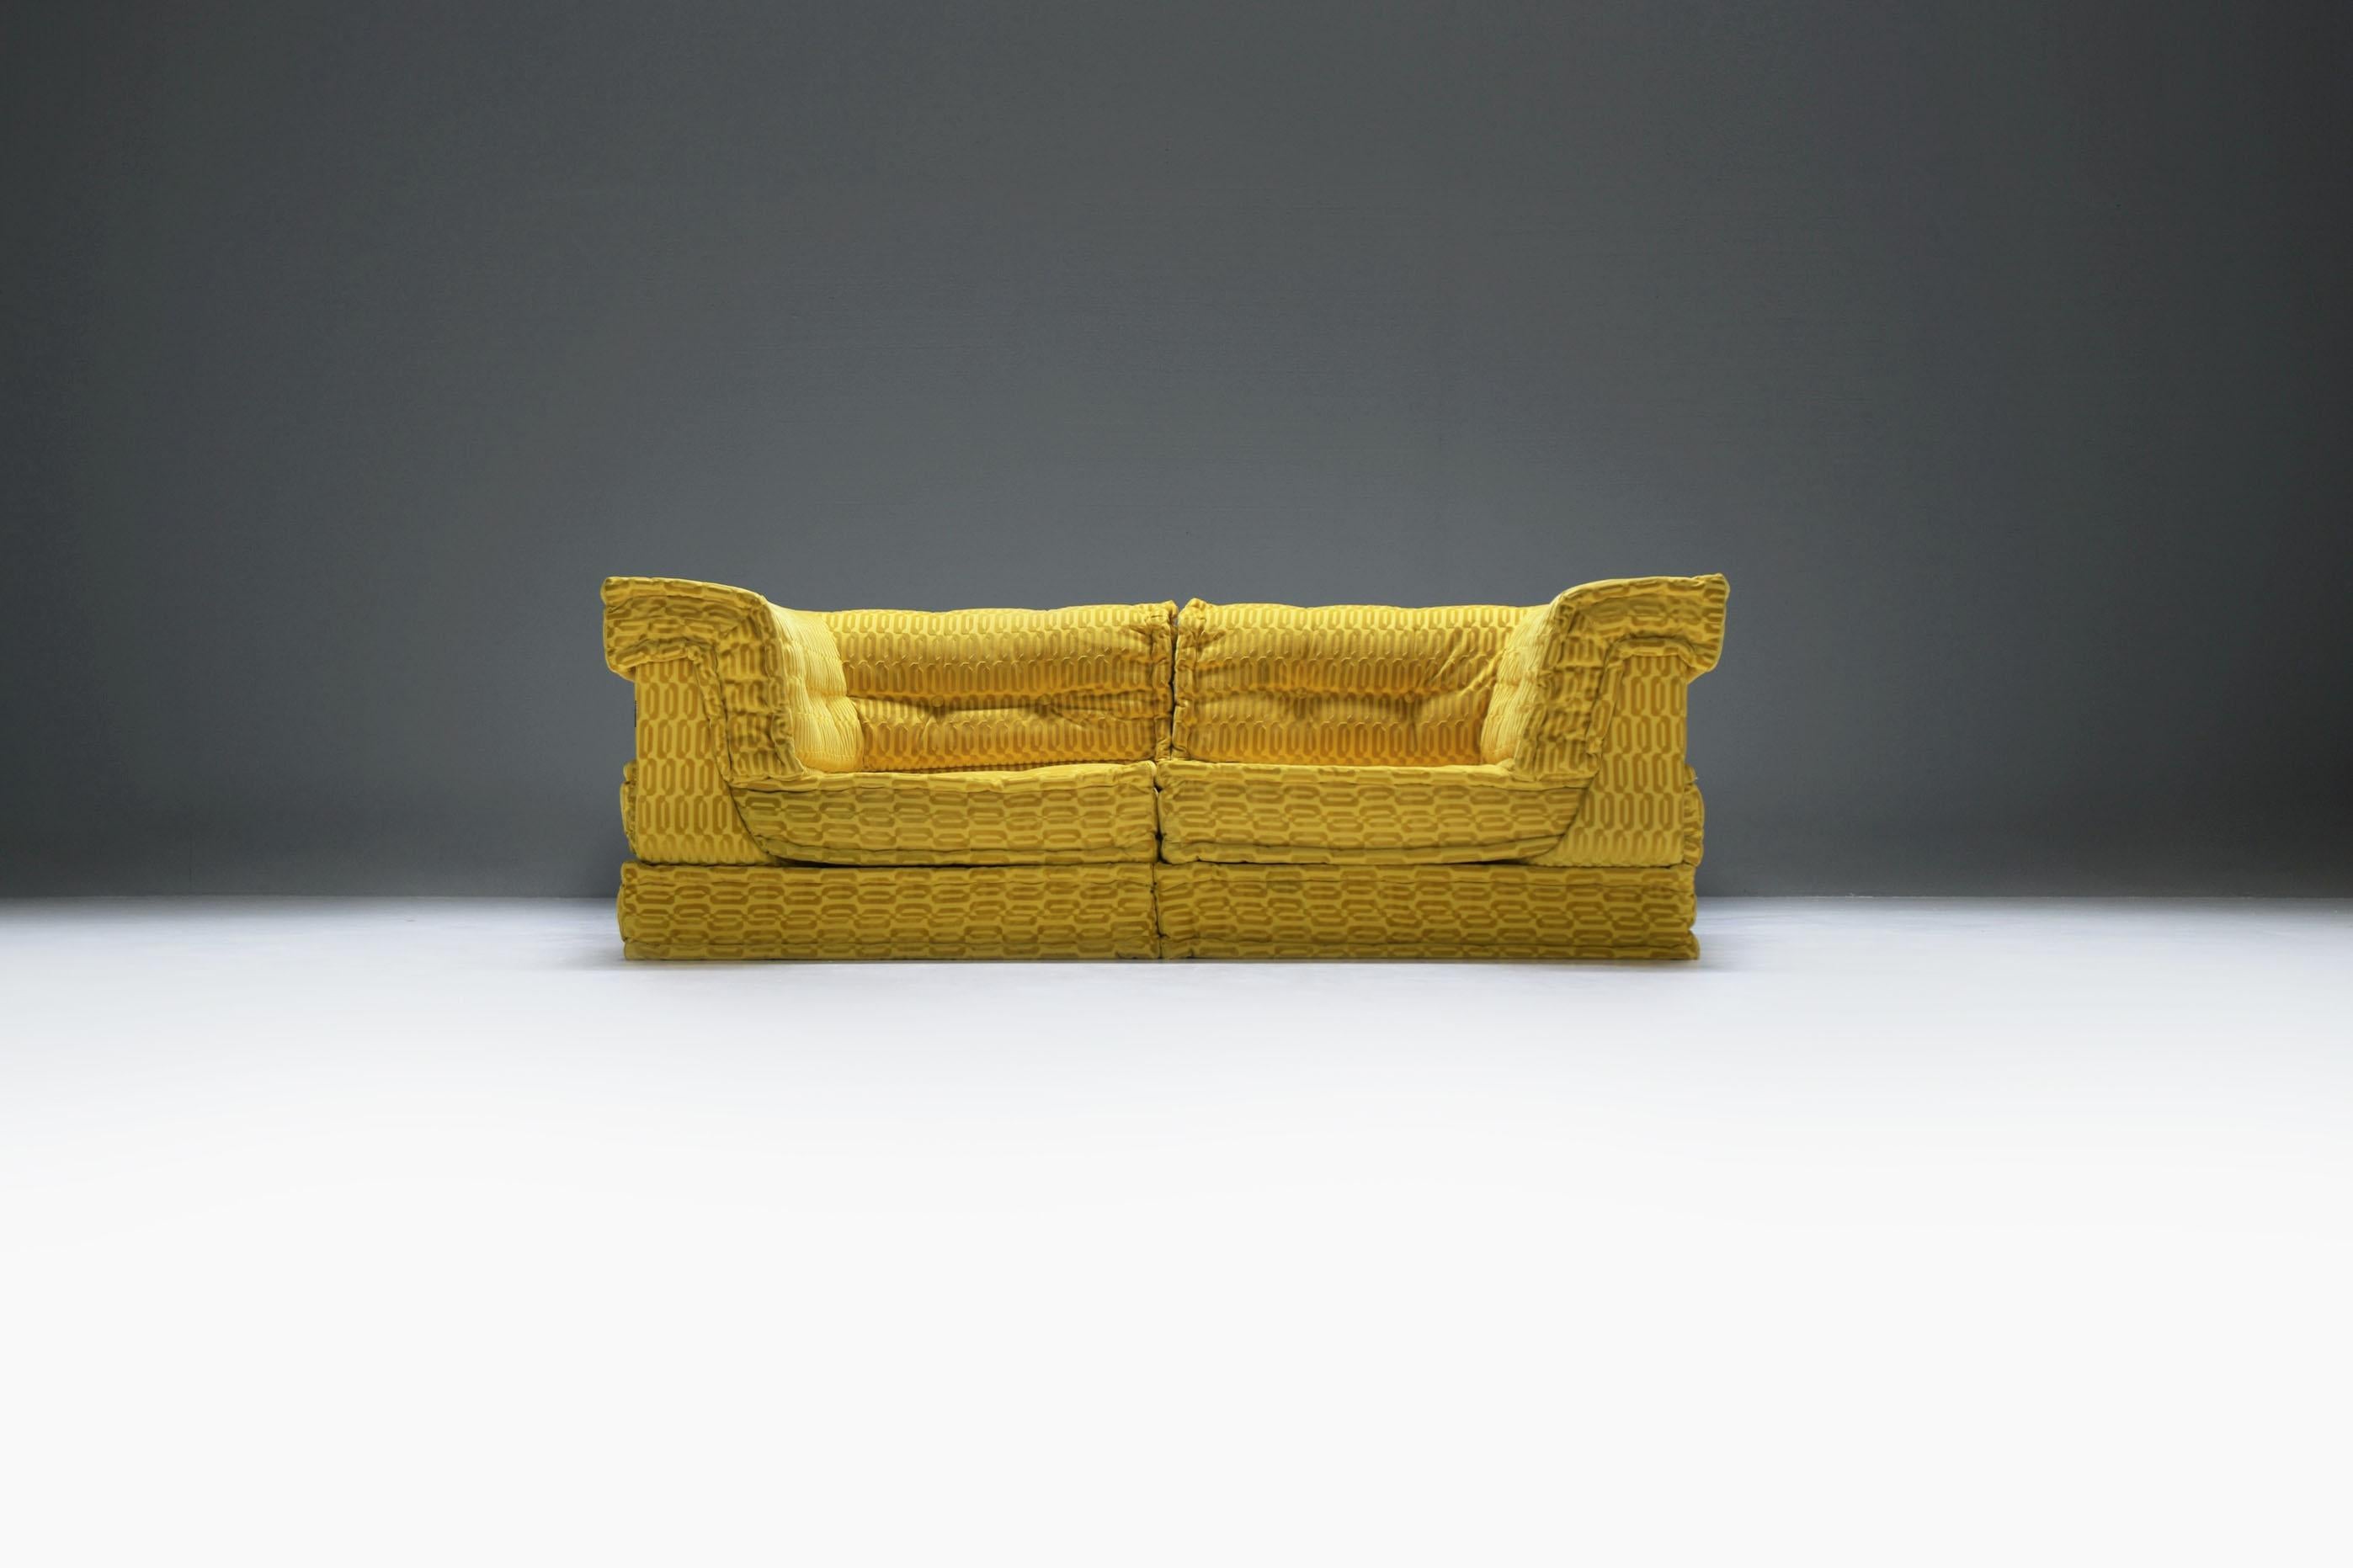 Mah Jong extrêmement rare et étonnant !  Roche Bobois a créé ce canapé unique pour une célébrité dans un tissu jaune/or personnalisé. Le choix du tissu jaune/or vibrant ajoute une touche de luxe et d'élégance à la pièce, ce qui en fait un élément